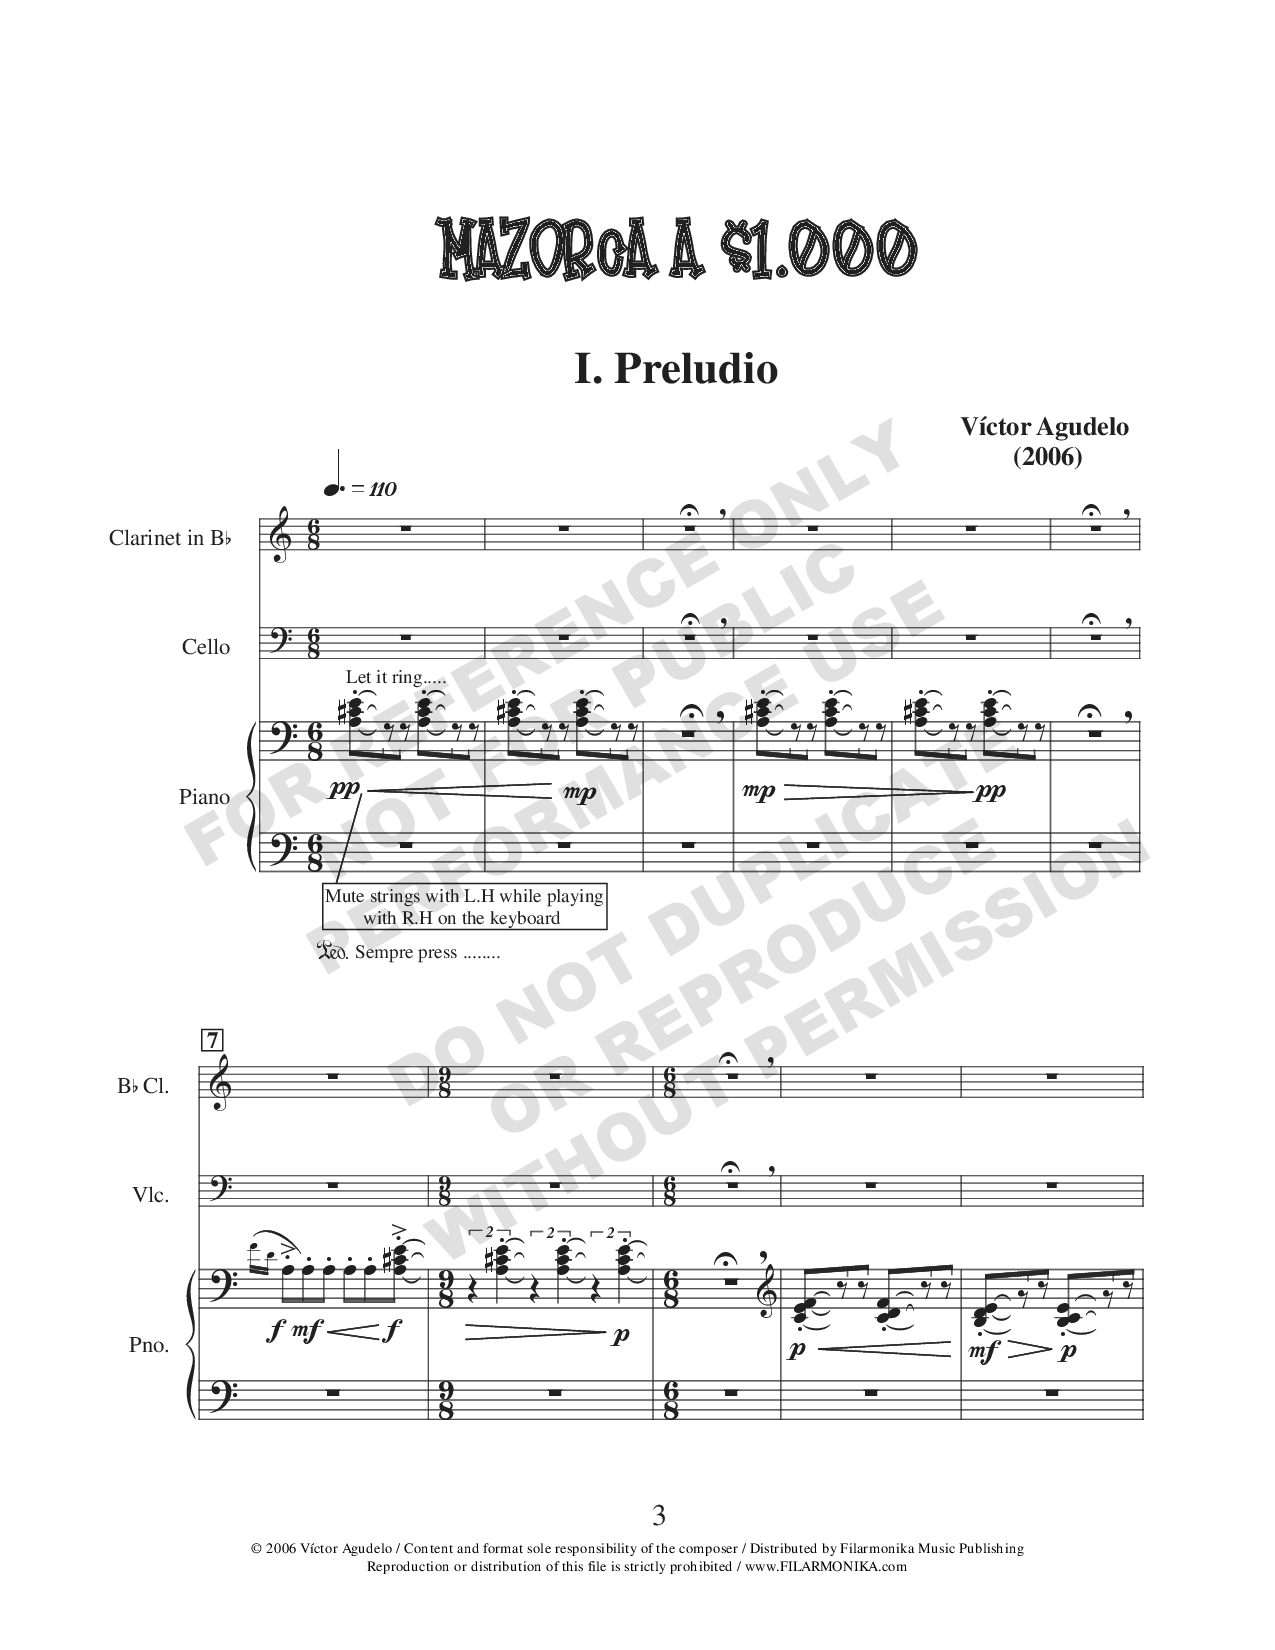 Mazorca a $1000, for clarinet, cello, and piano